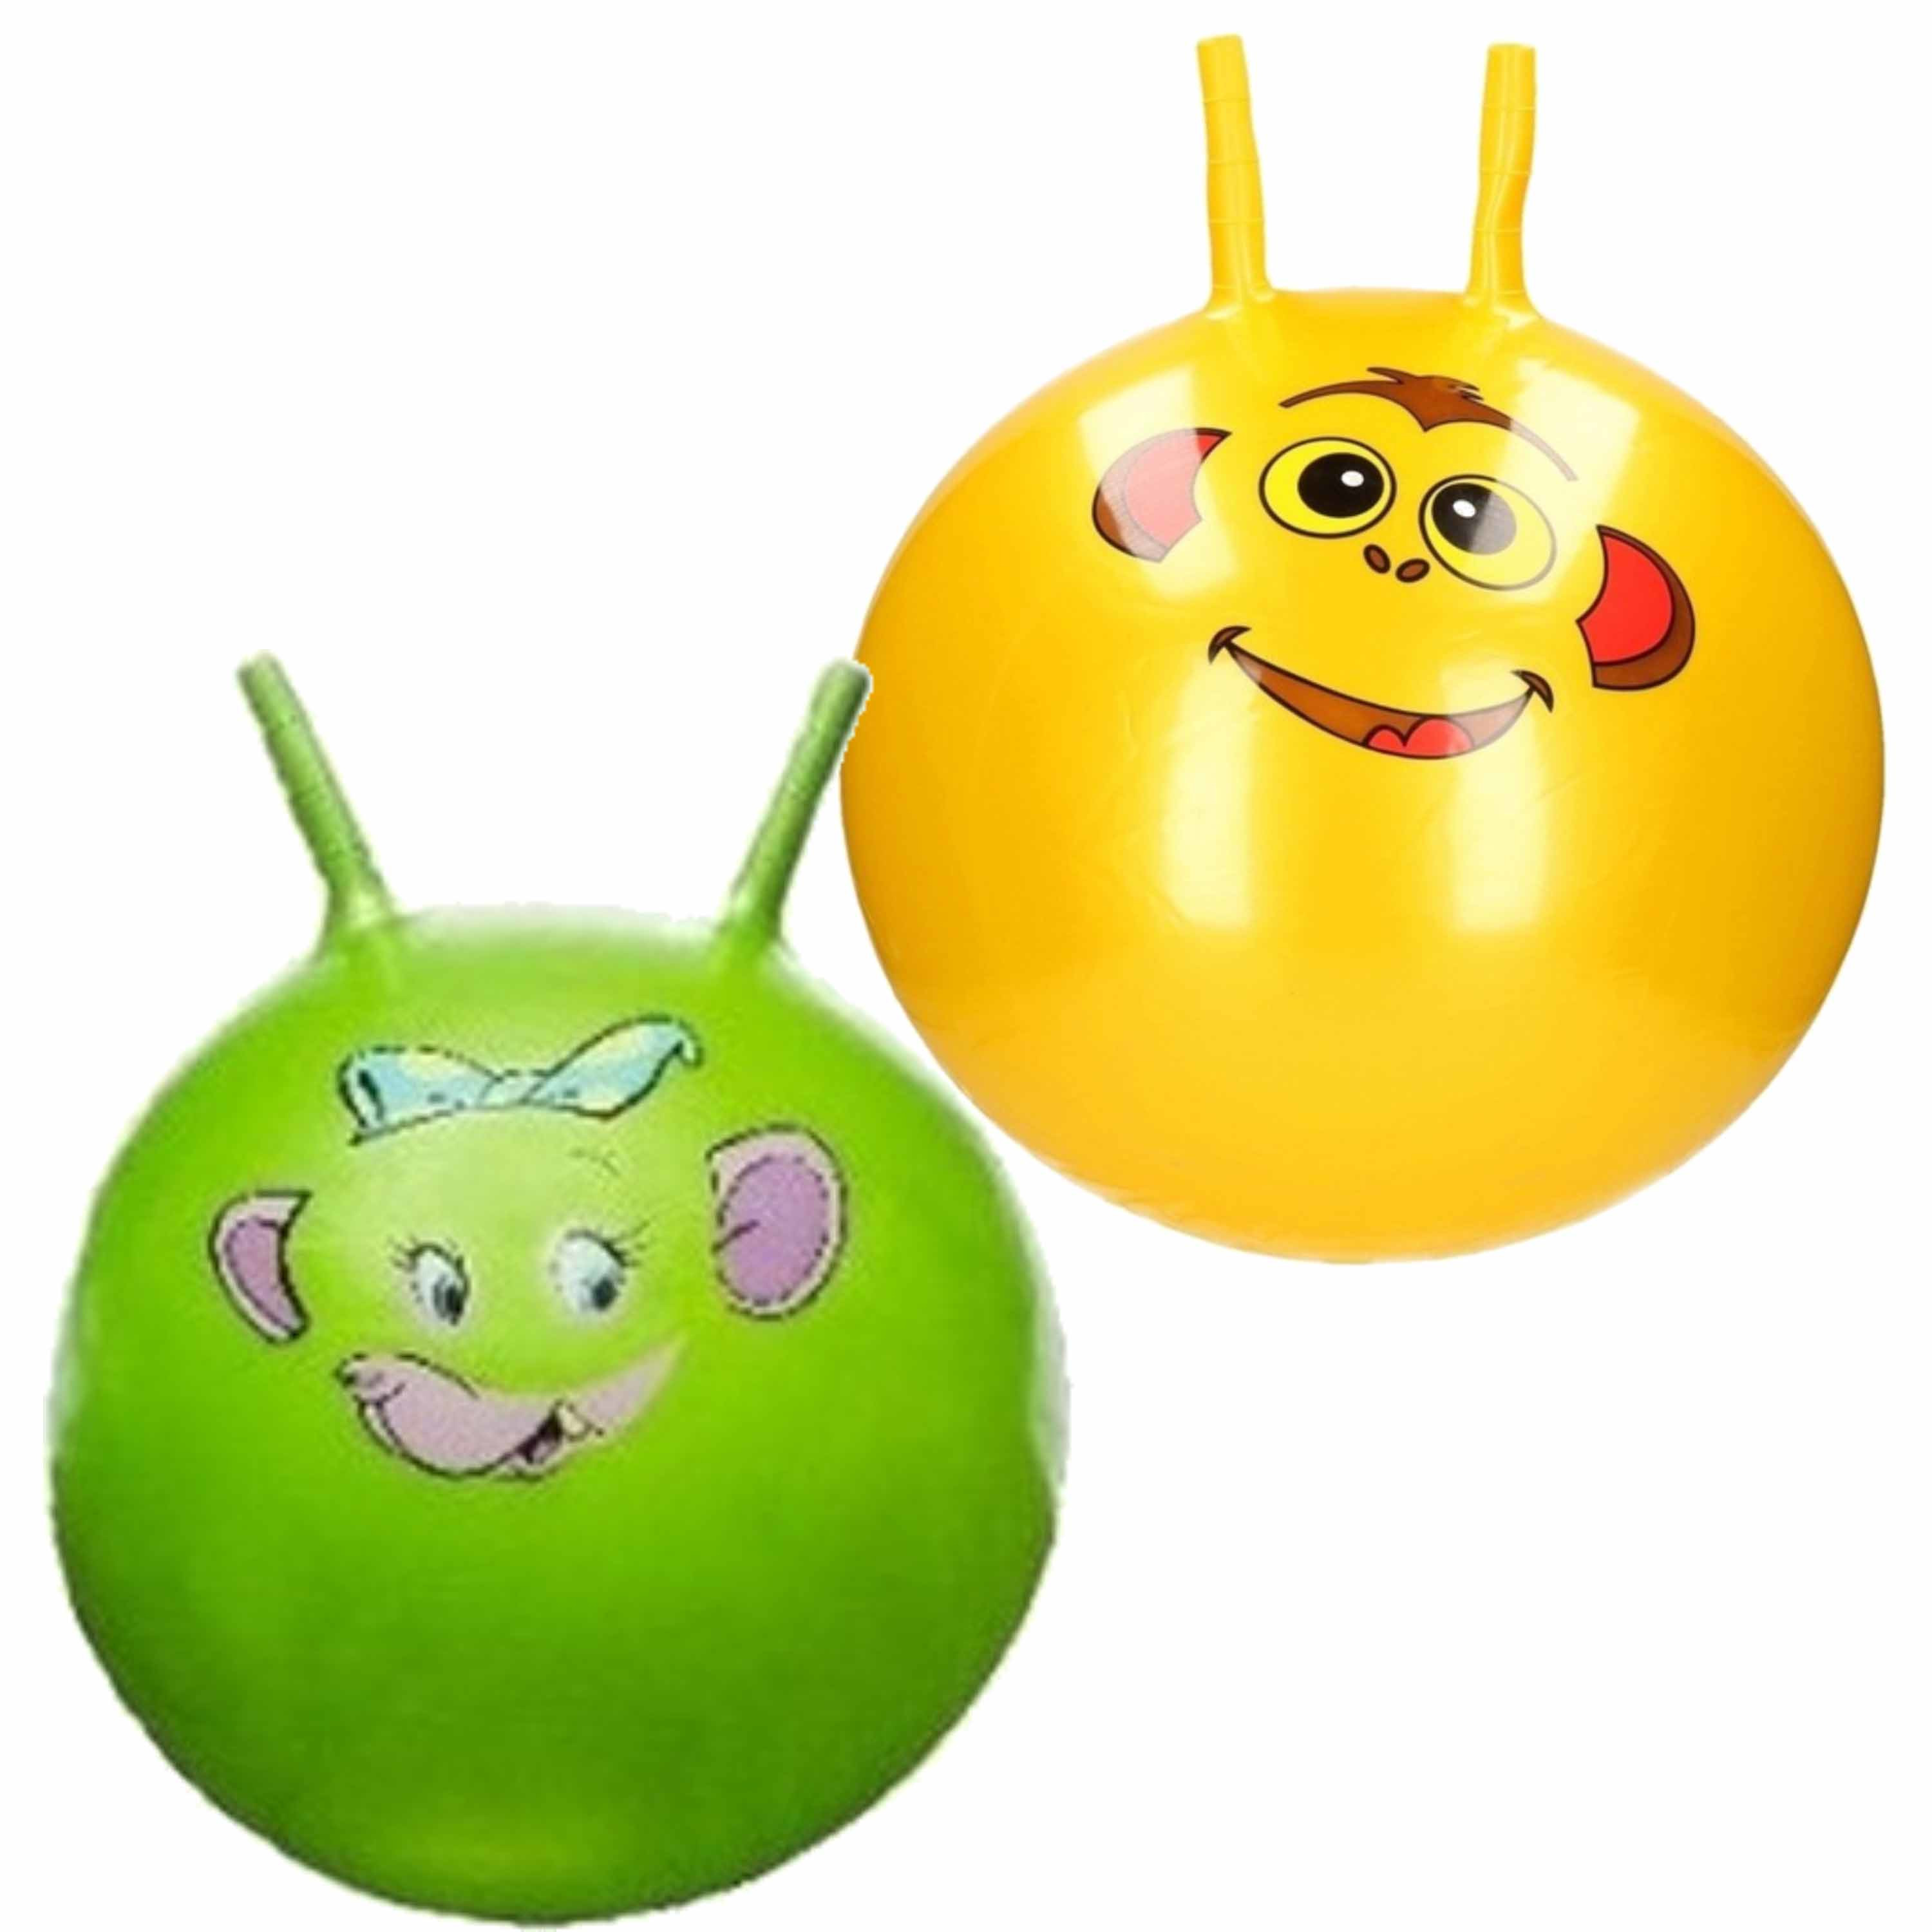 2x stuks speelgoed Skippyballen met dieren gezicht geel en groen 46 cm